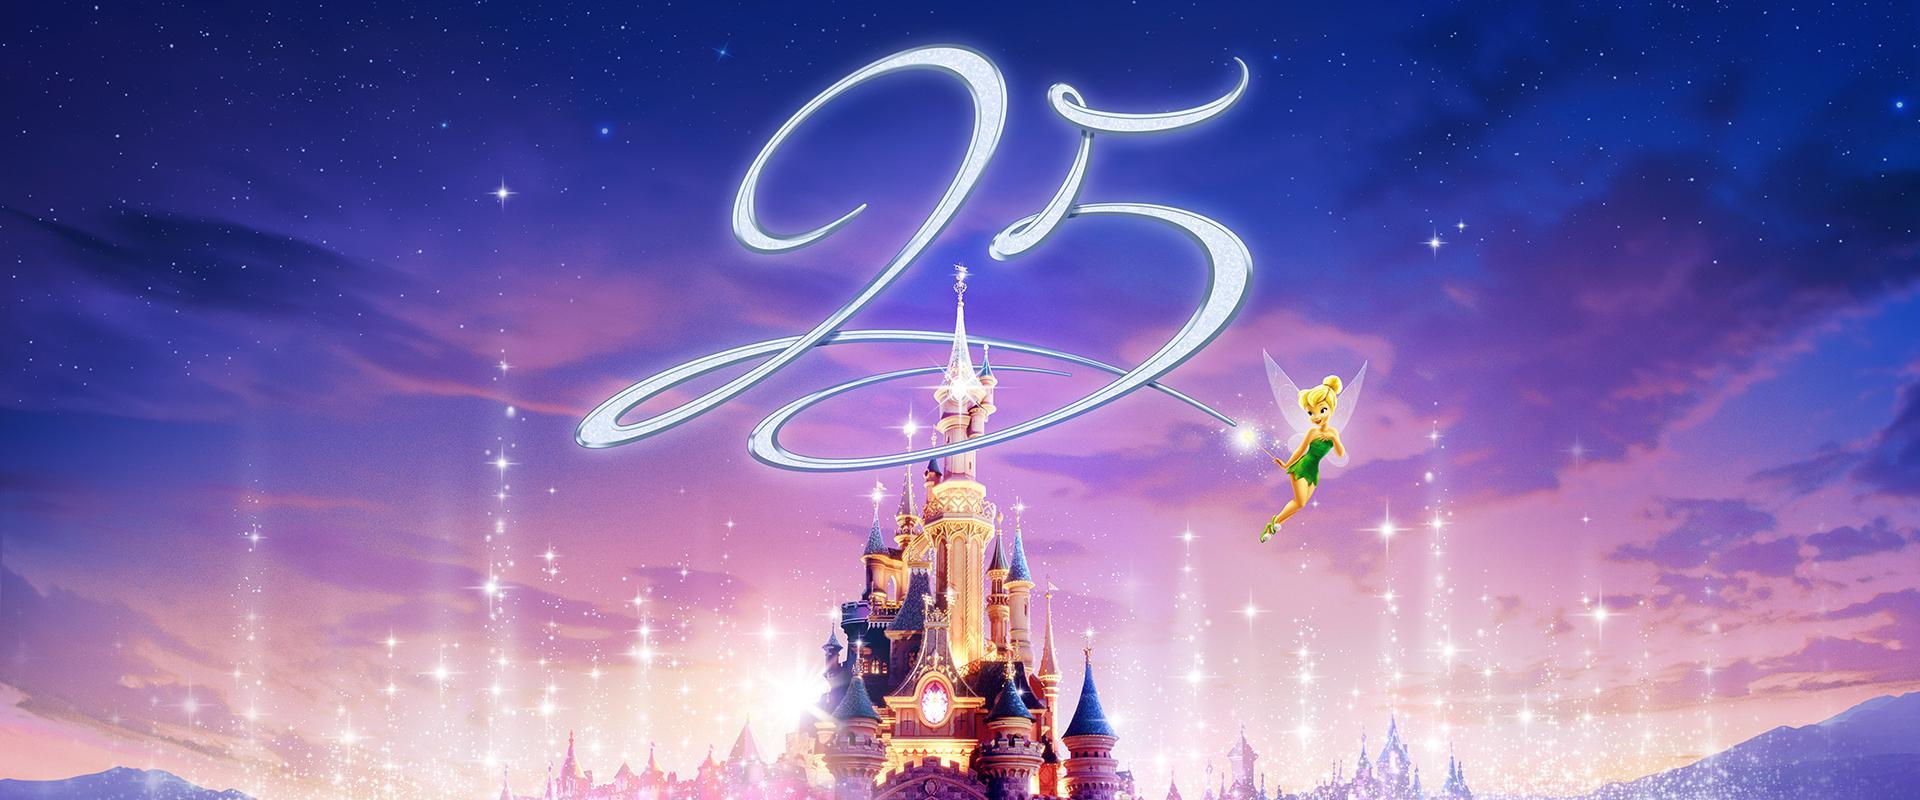 Disneyland Paris Logo - Disneyland Paris 25th Anniversary - Find out what's new ...